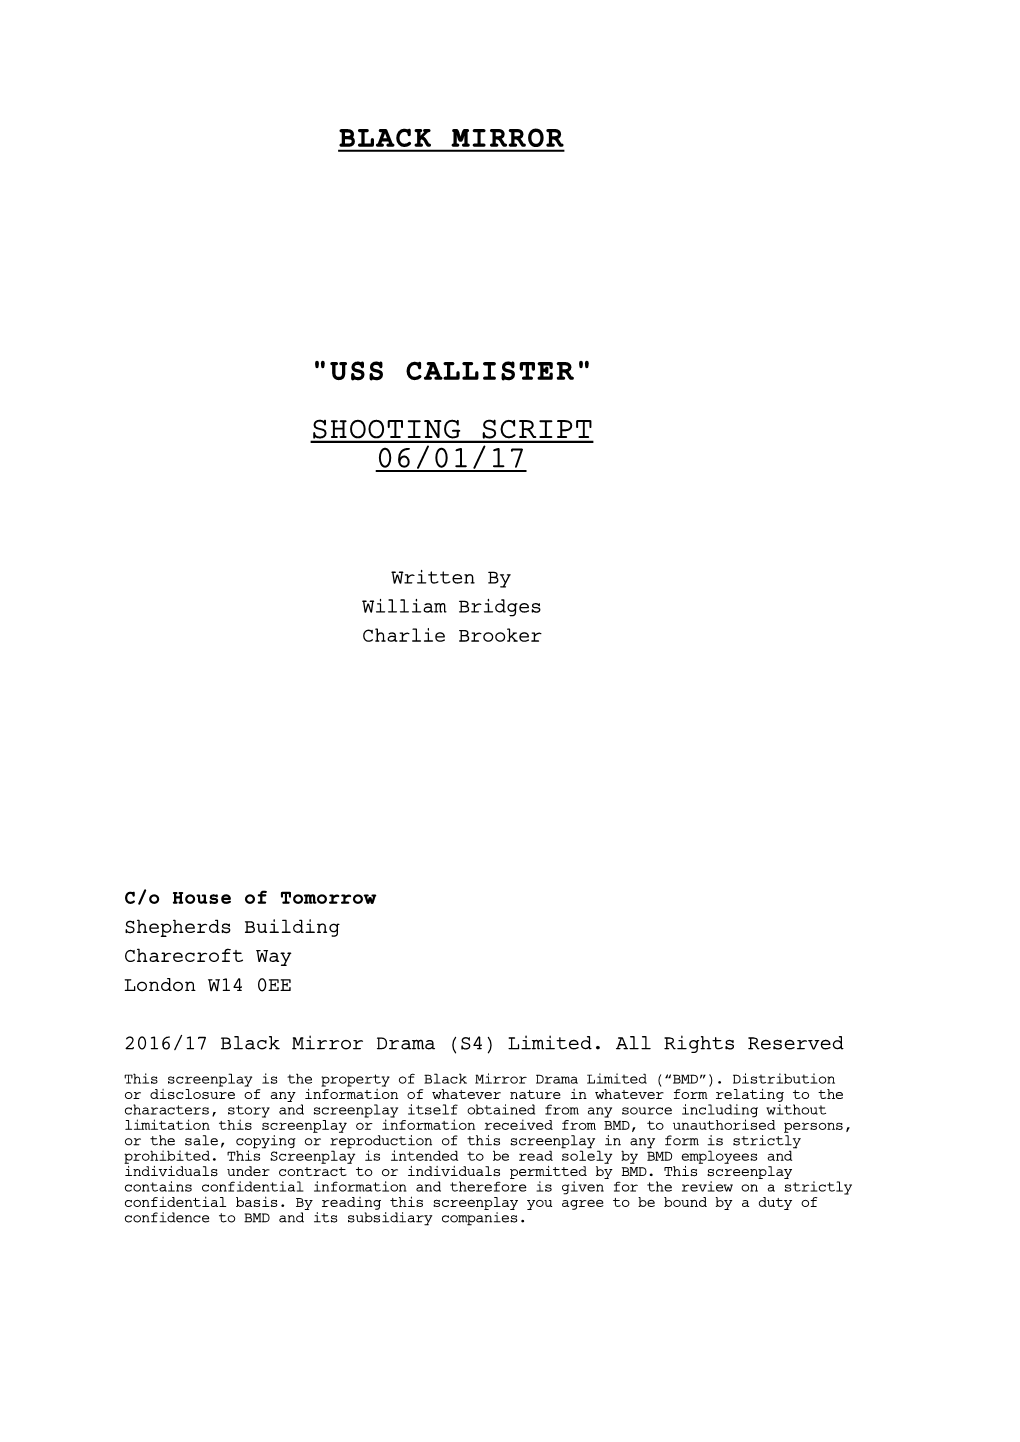 Uss Callister" Shooting Script 06/01/17